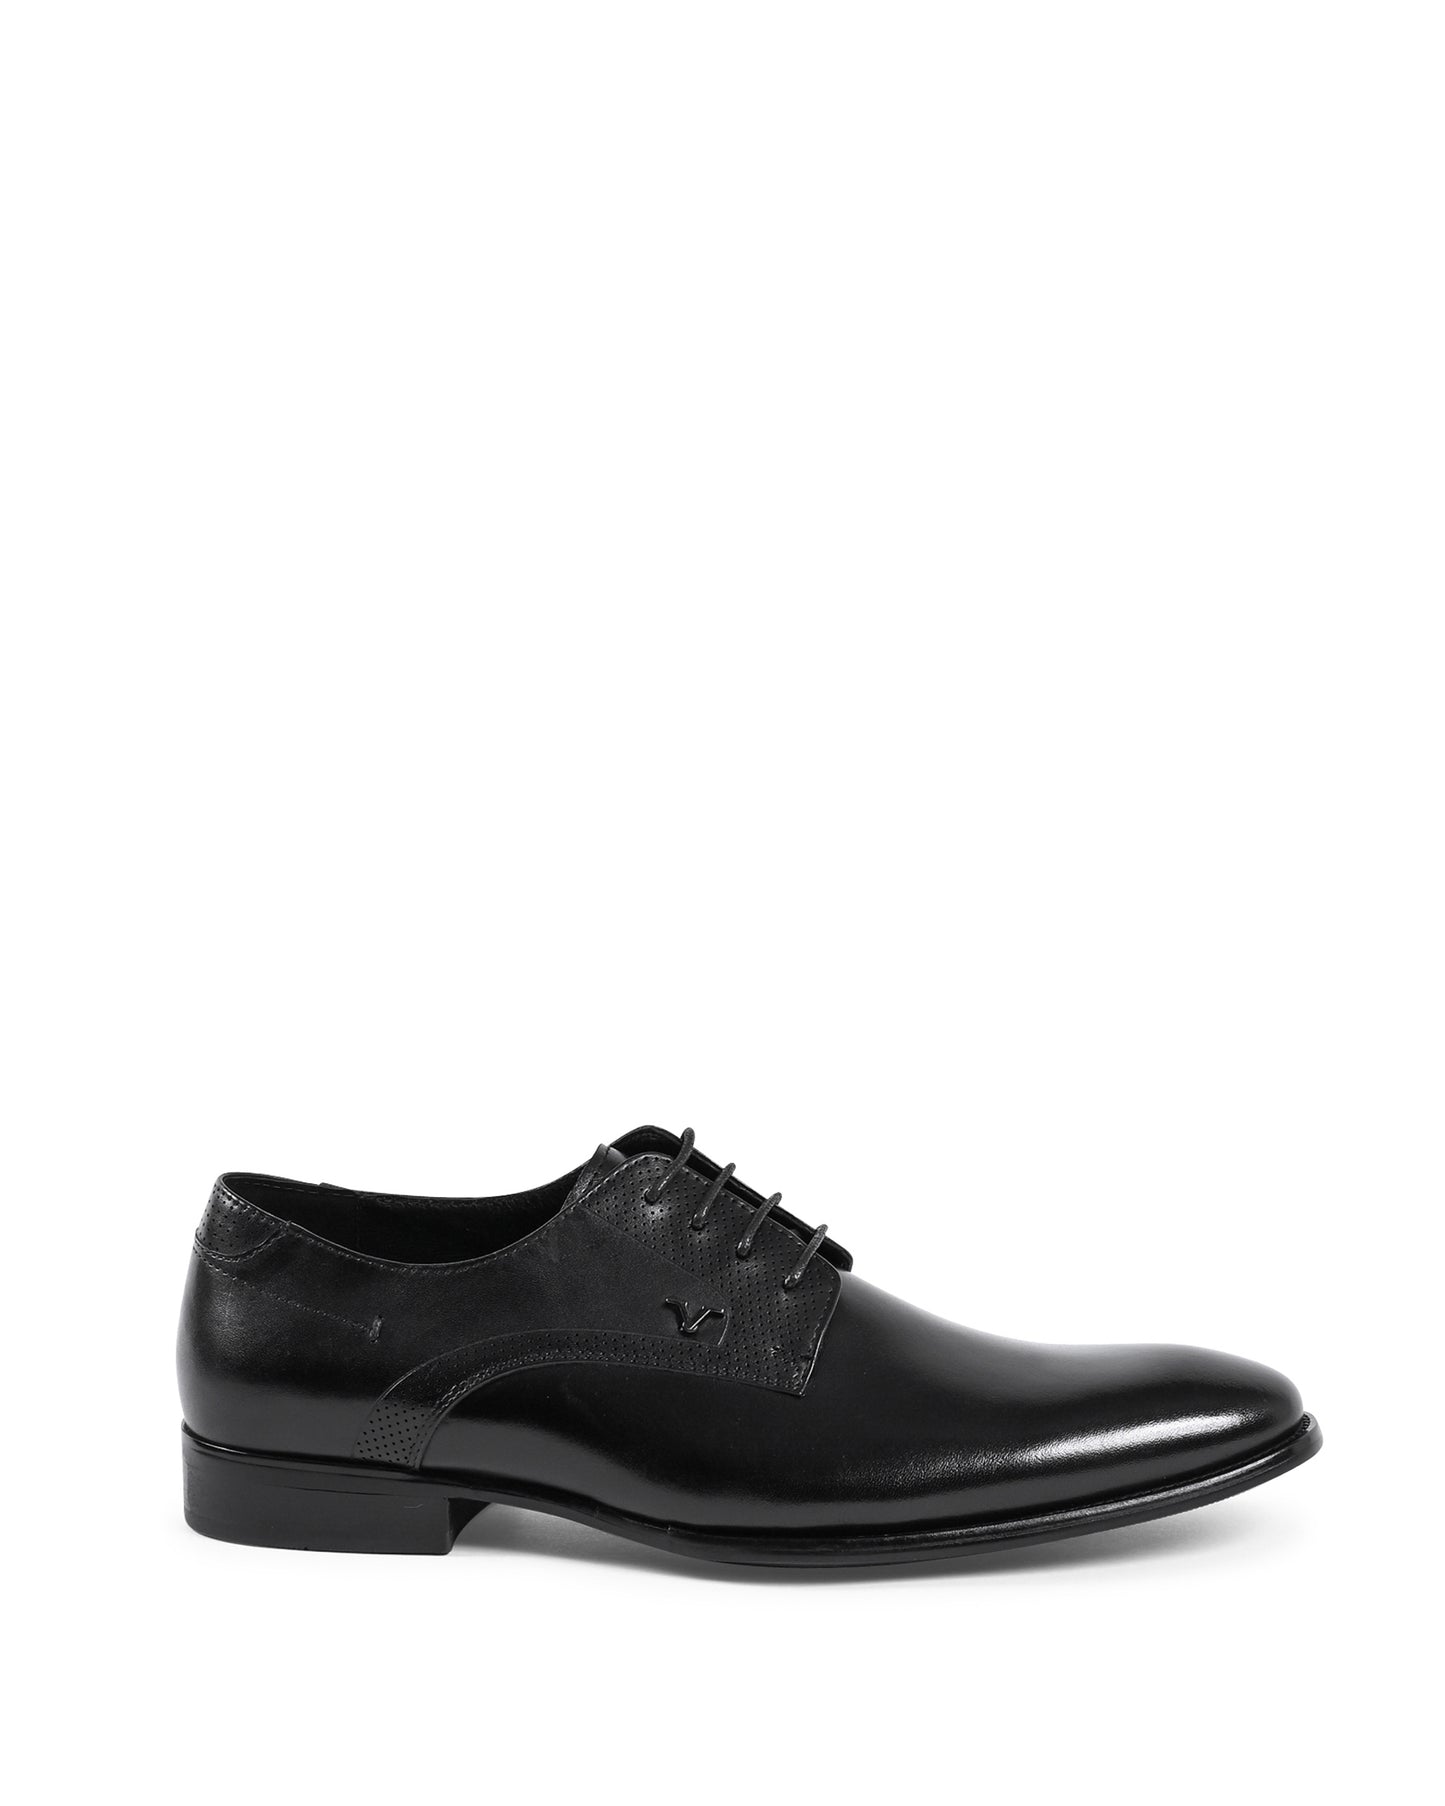 19V69 Italia Mens Classic Shoes Black YO X9005-1 BLACK